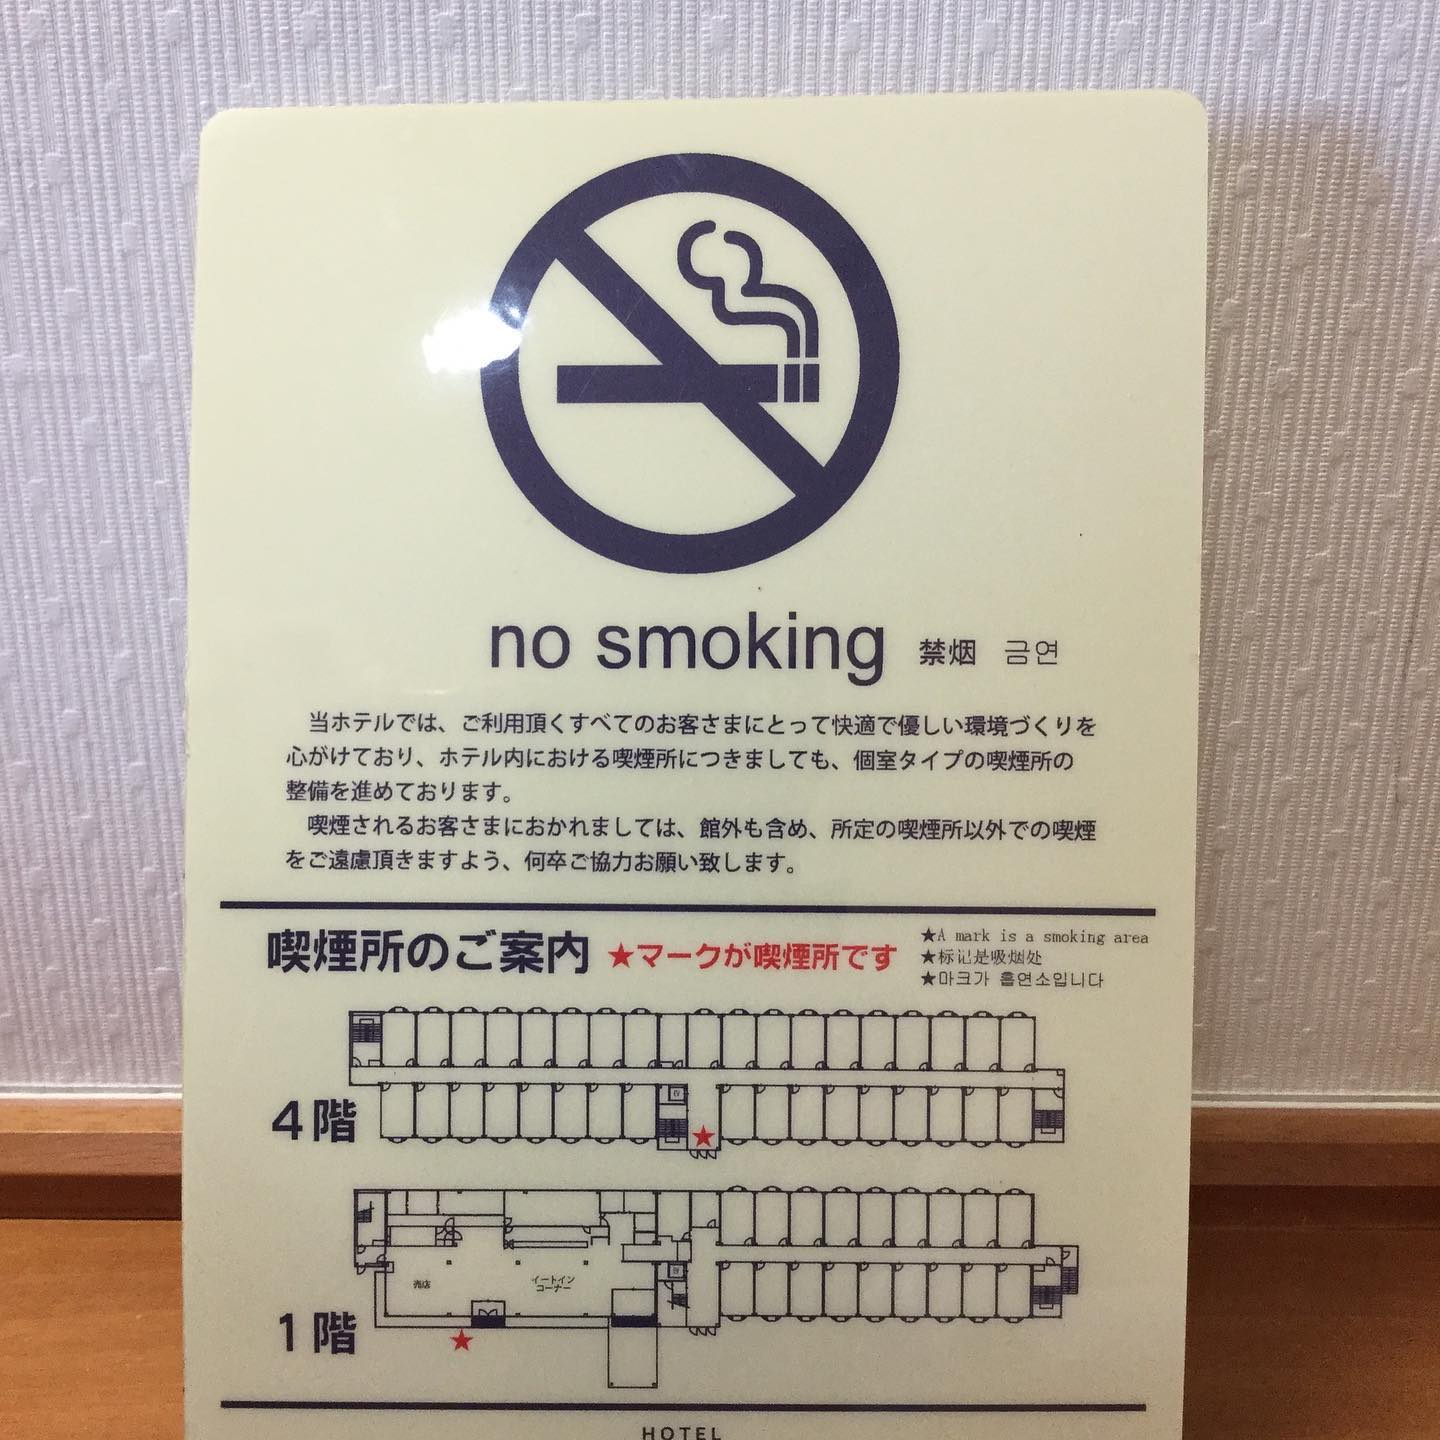 ホテル秋田御所野です。全１２２室禁煙ルームでございます。館内に1ヶ所喫煙所を設けております。愛煙家の方は喫煙所をご利用下さいませ。#秋田市ホテル　#御所野　#ビジネスホテル　#禁煙　#禁煙ルーム　#喫煙所